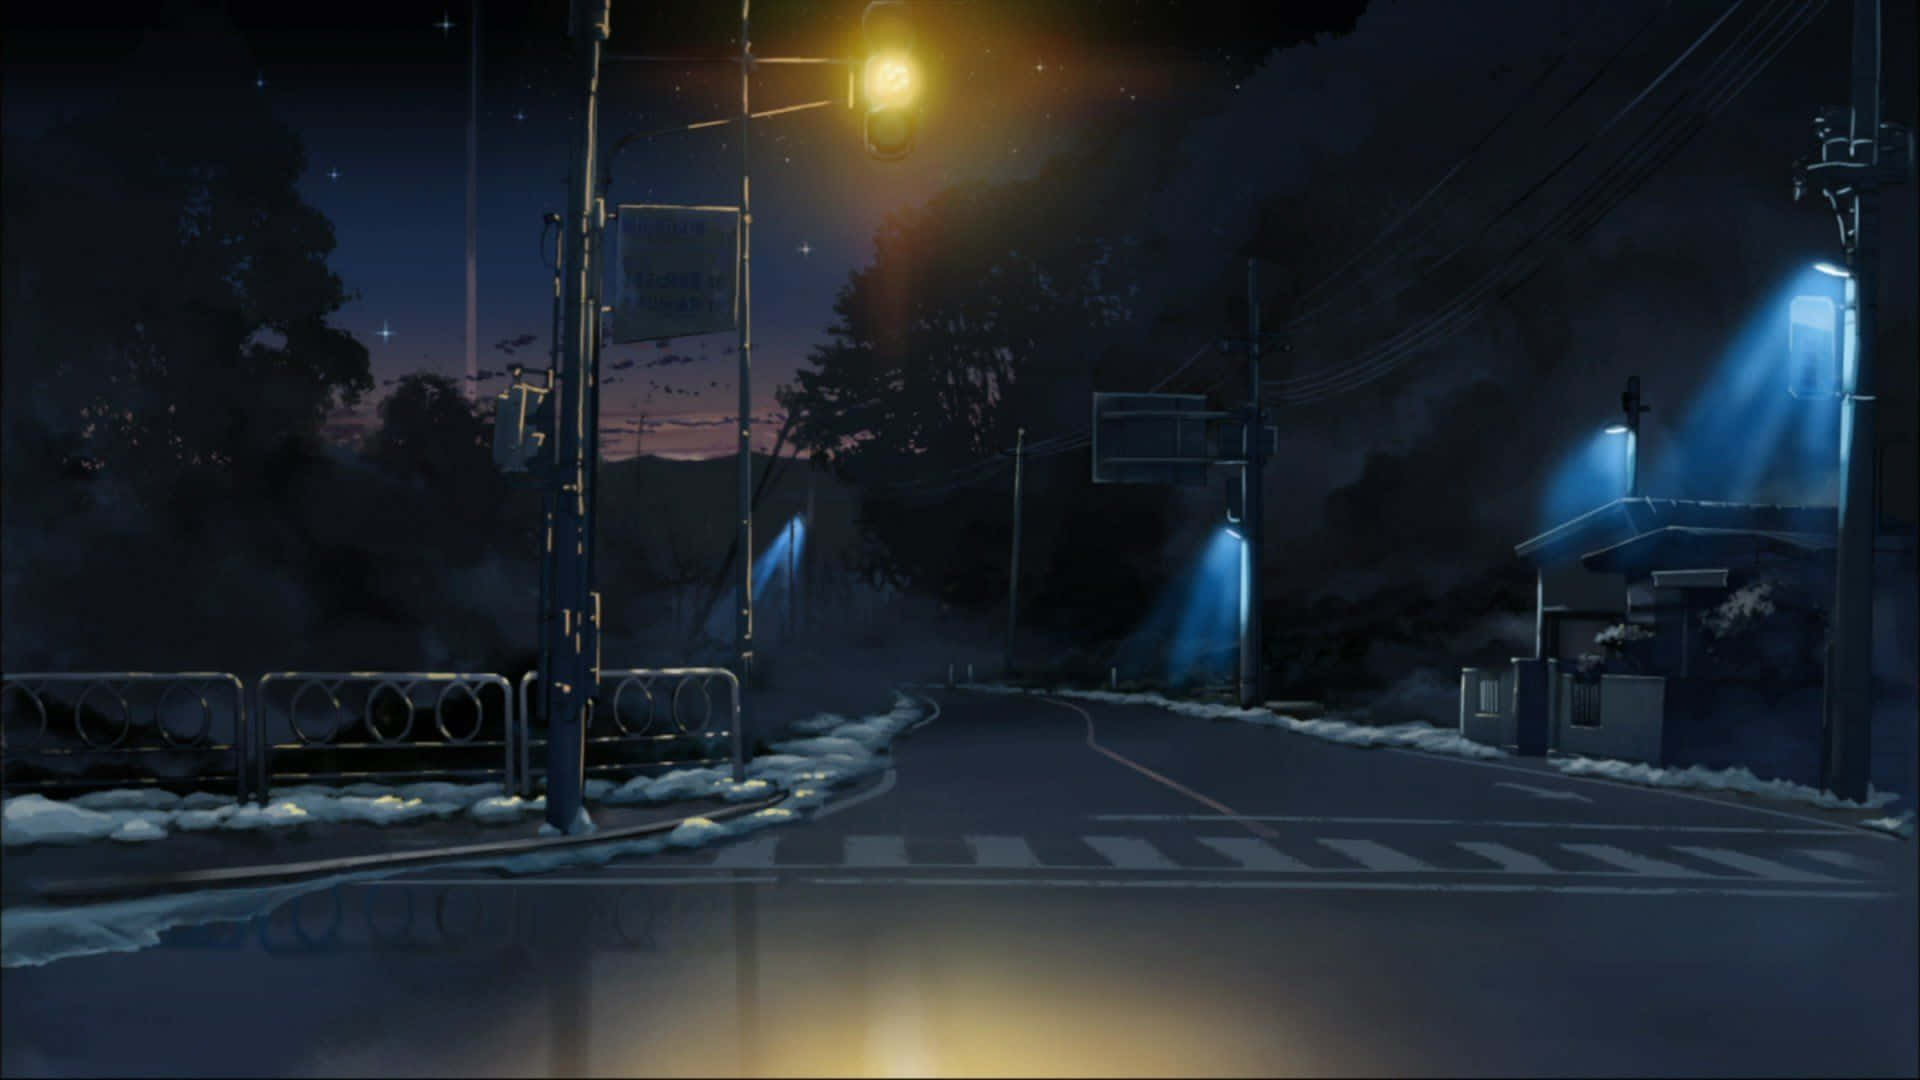 ArtStation - City anime background art